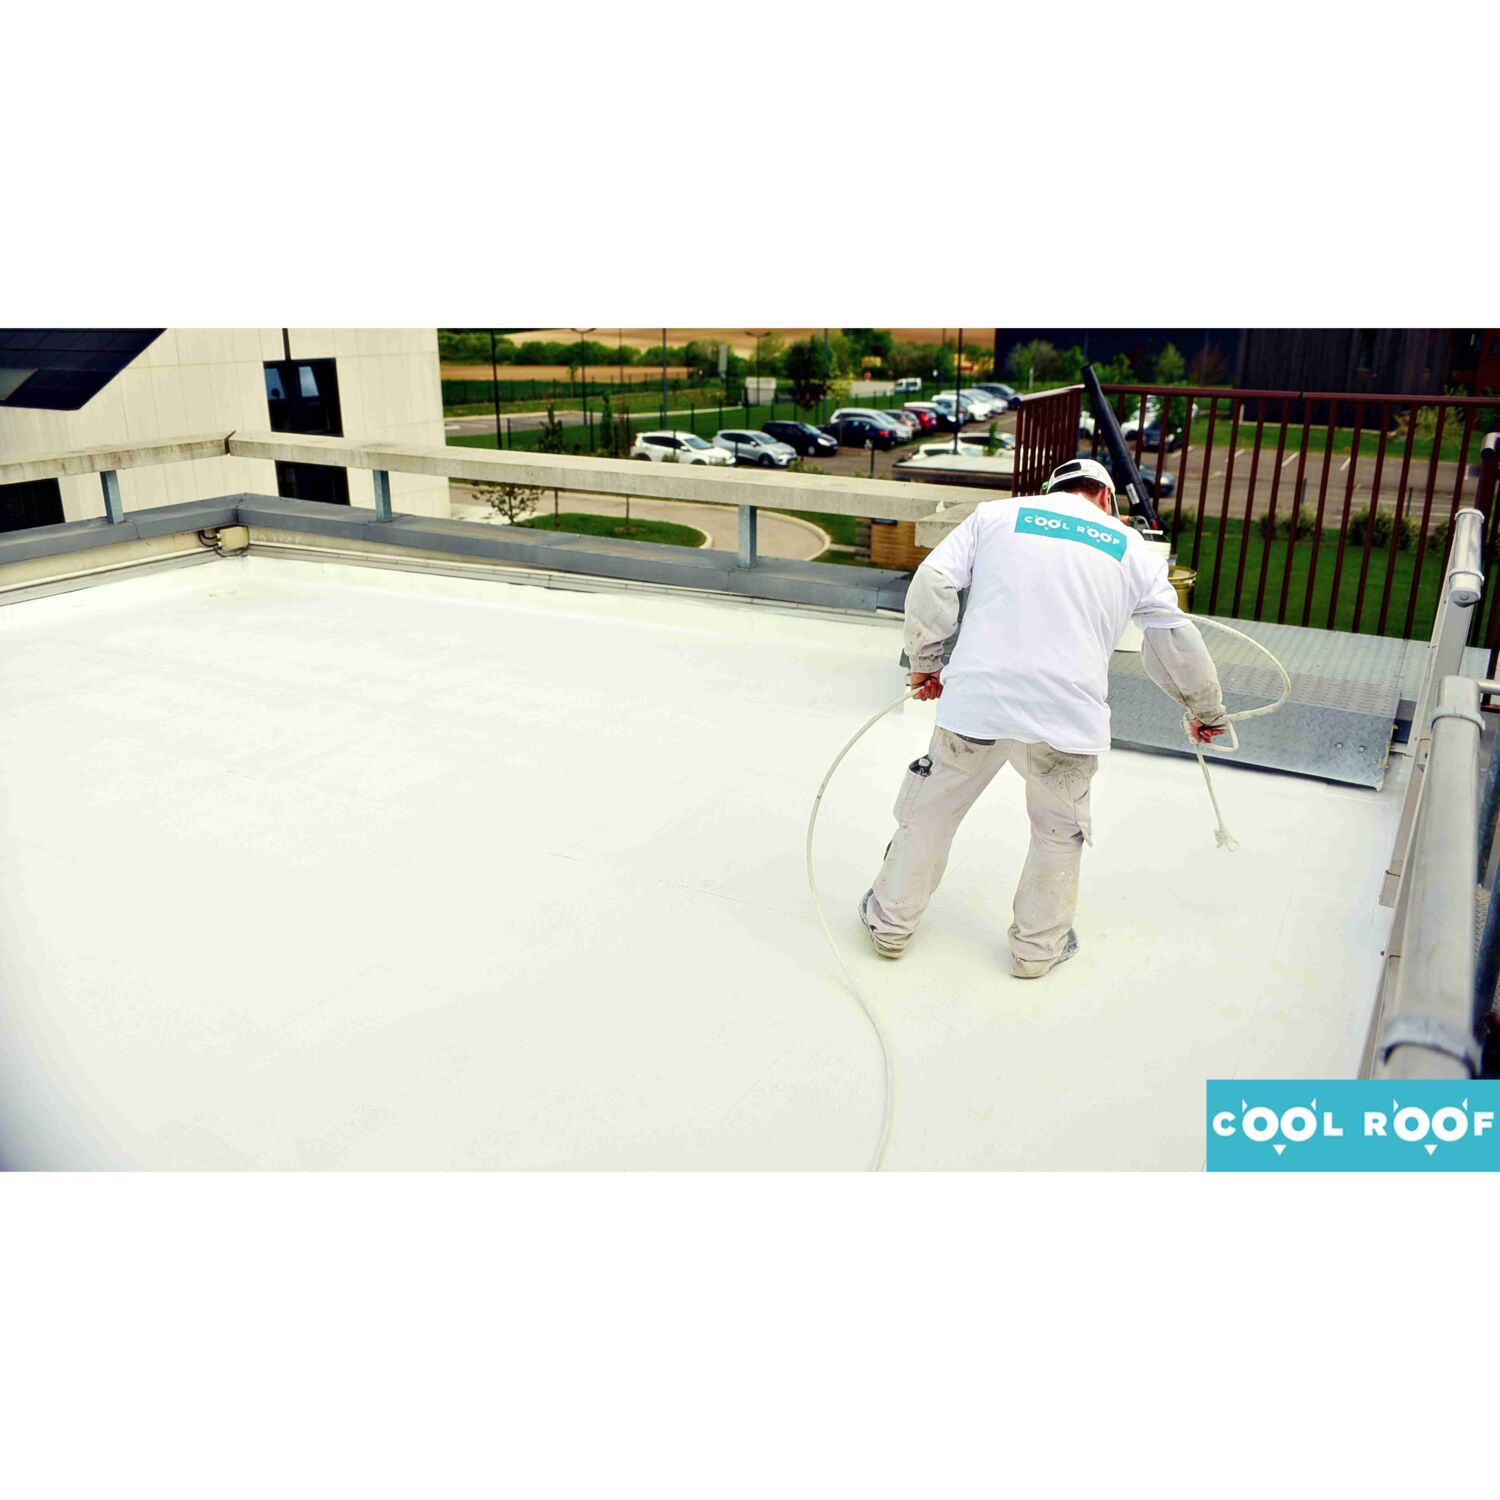 Cool Roof - Repeindre son toit en blanc pour lutter contre la chaleur estivale